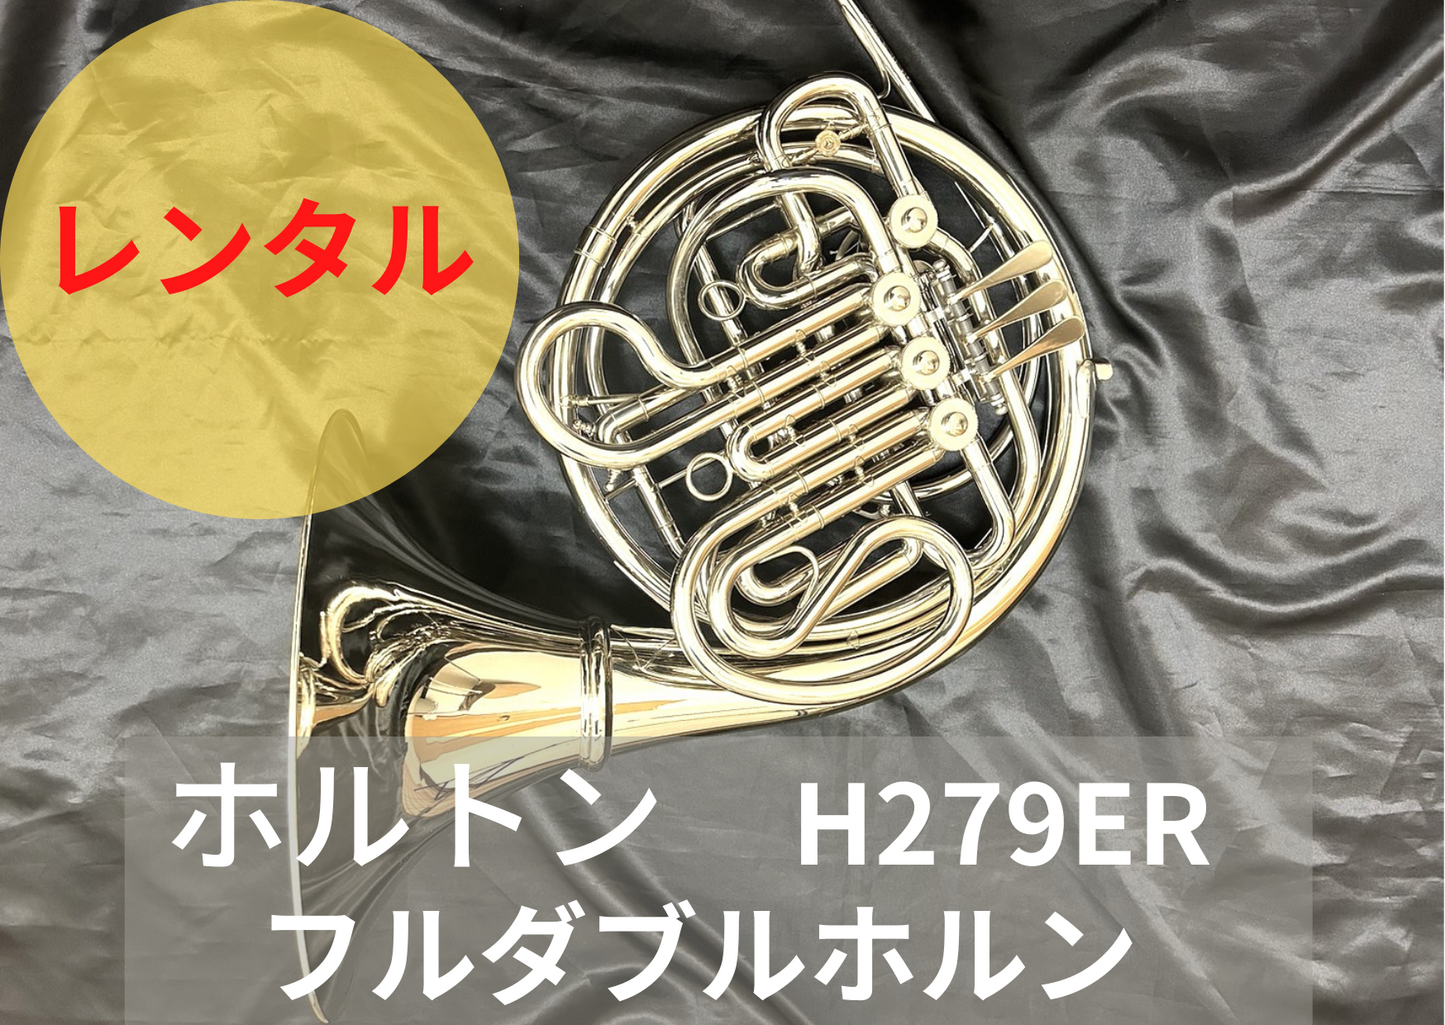 レンタル楽器 ホルトン H279ER フルダブルホルン